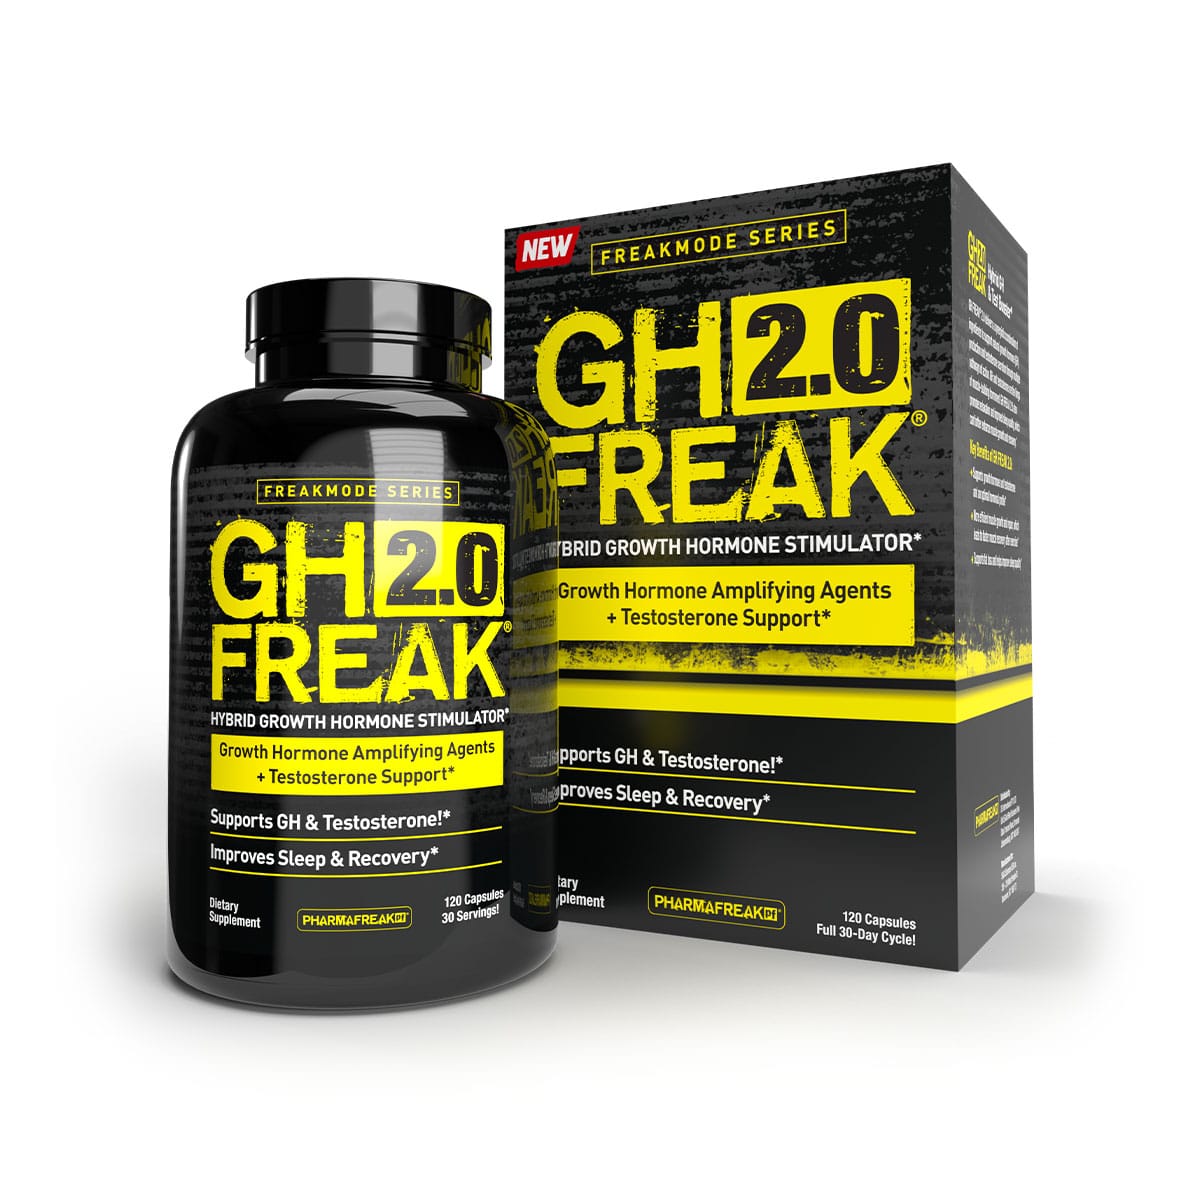 Pharmafreak GH Freak 2.0 Freakmode Series - 120s